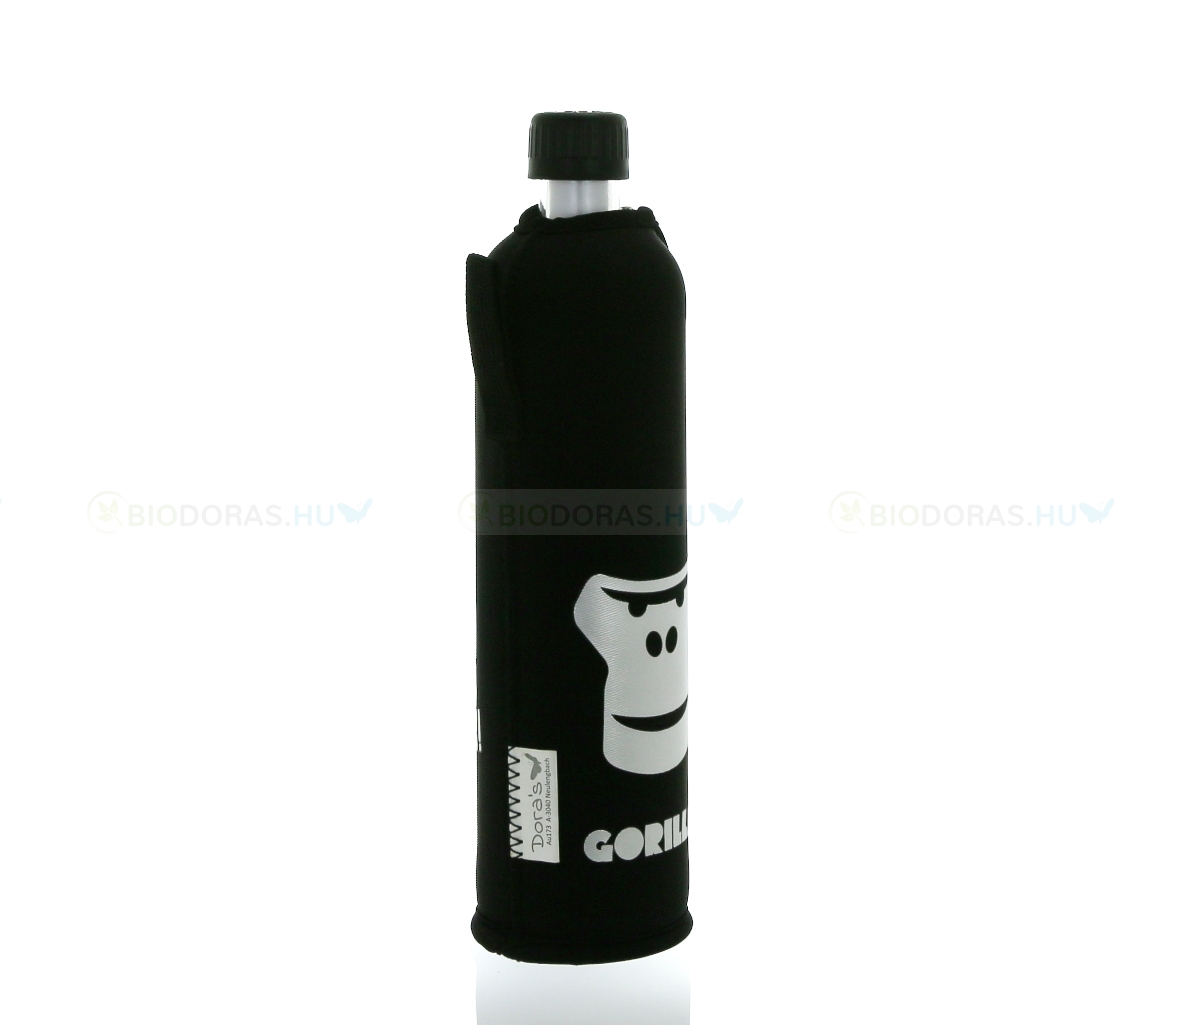 DORAS Üvegkulacs (üvegpalack) fekete alapon, ezüst színű gorilla mintás neoprén huzattal - 500 ml